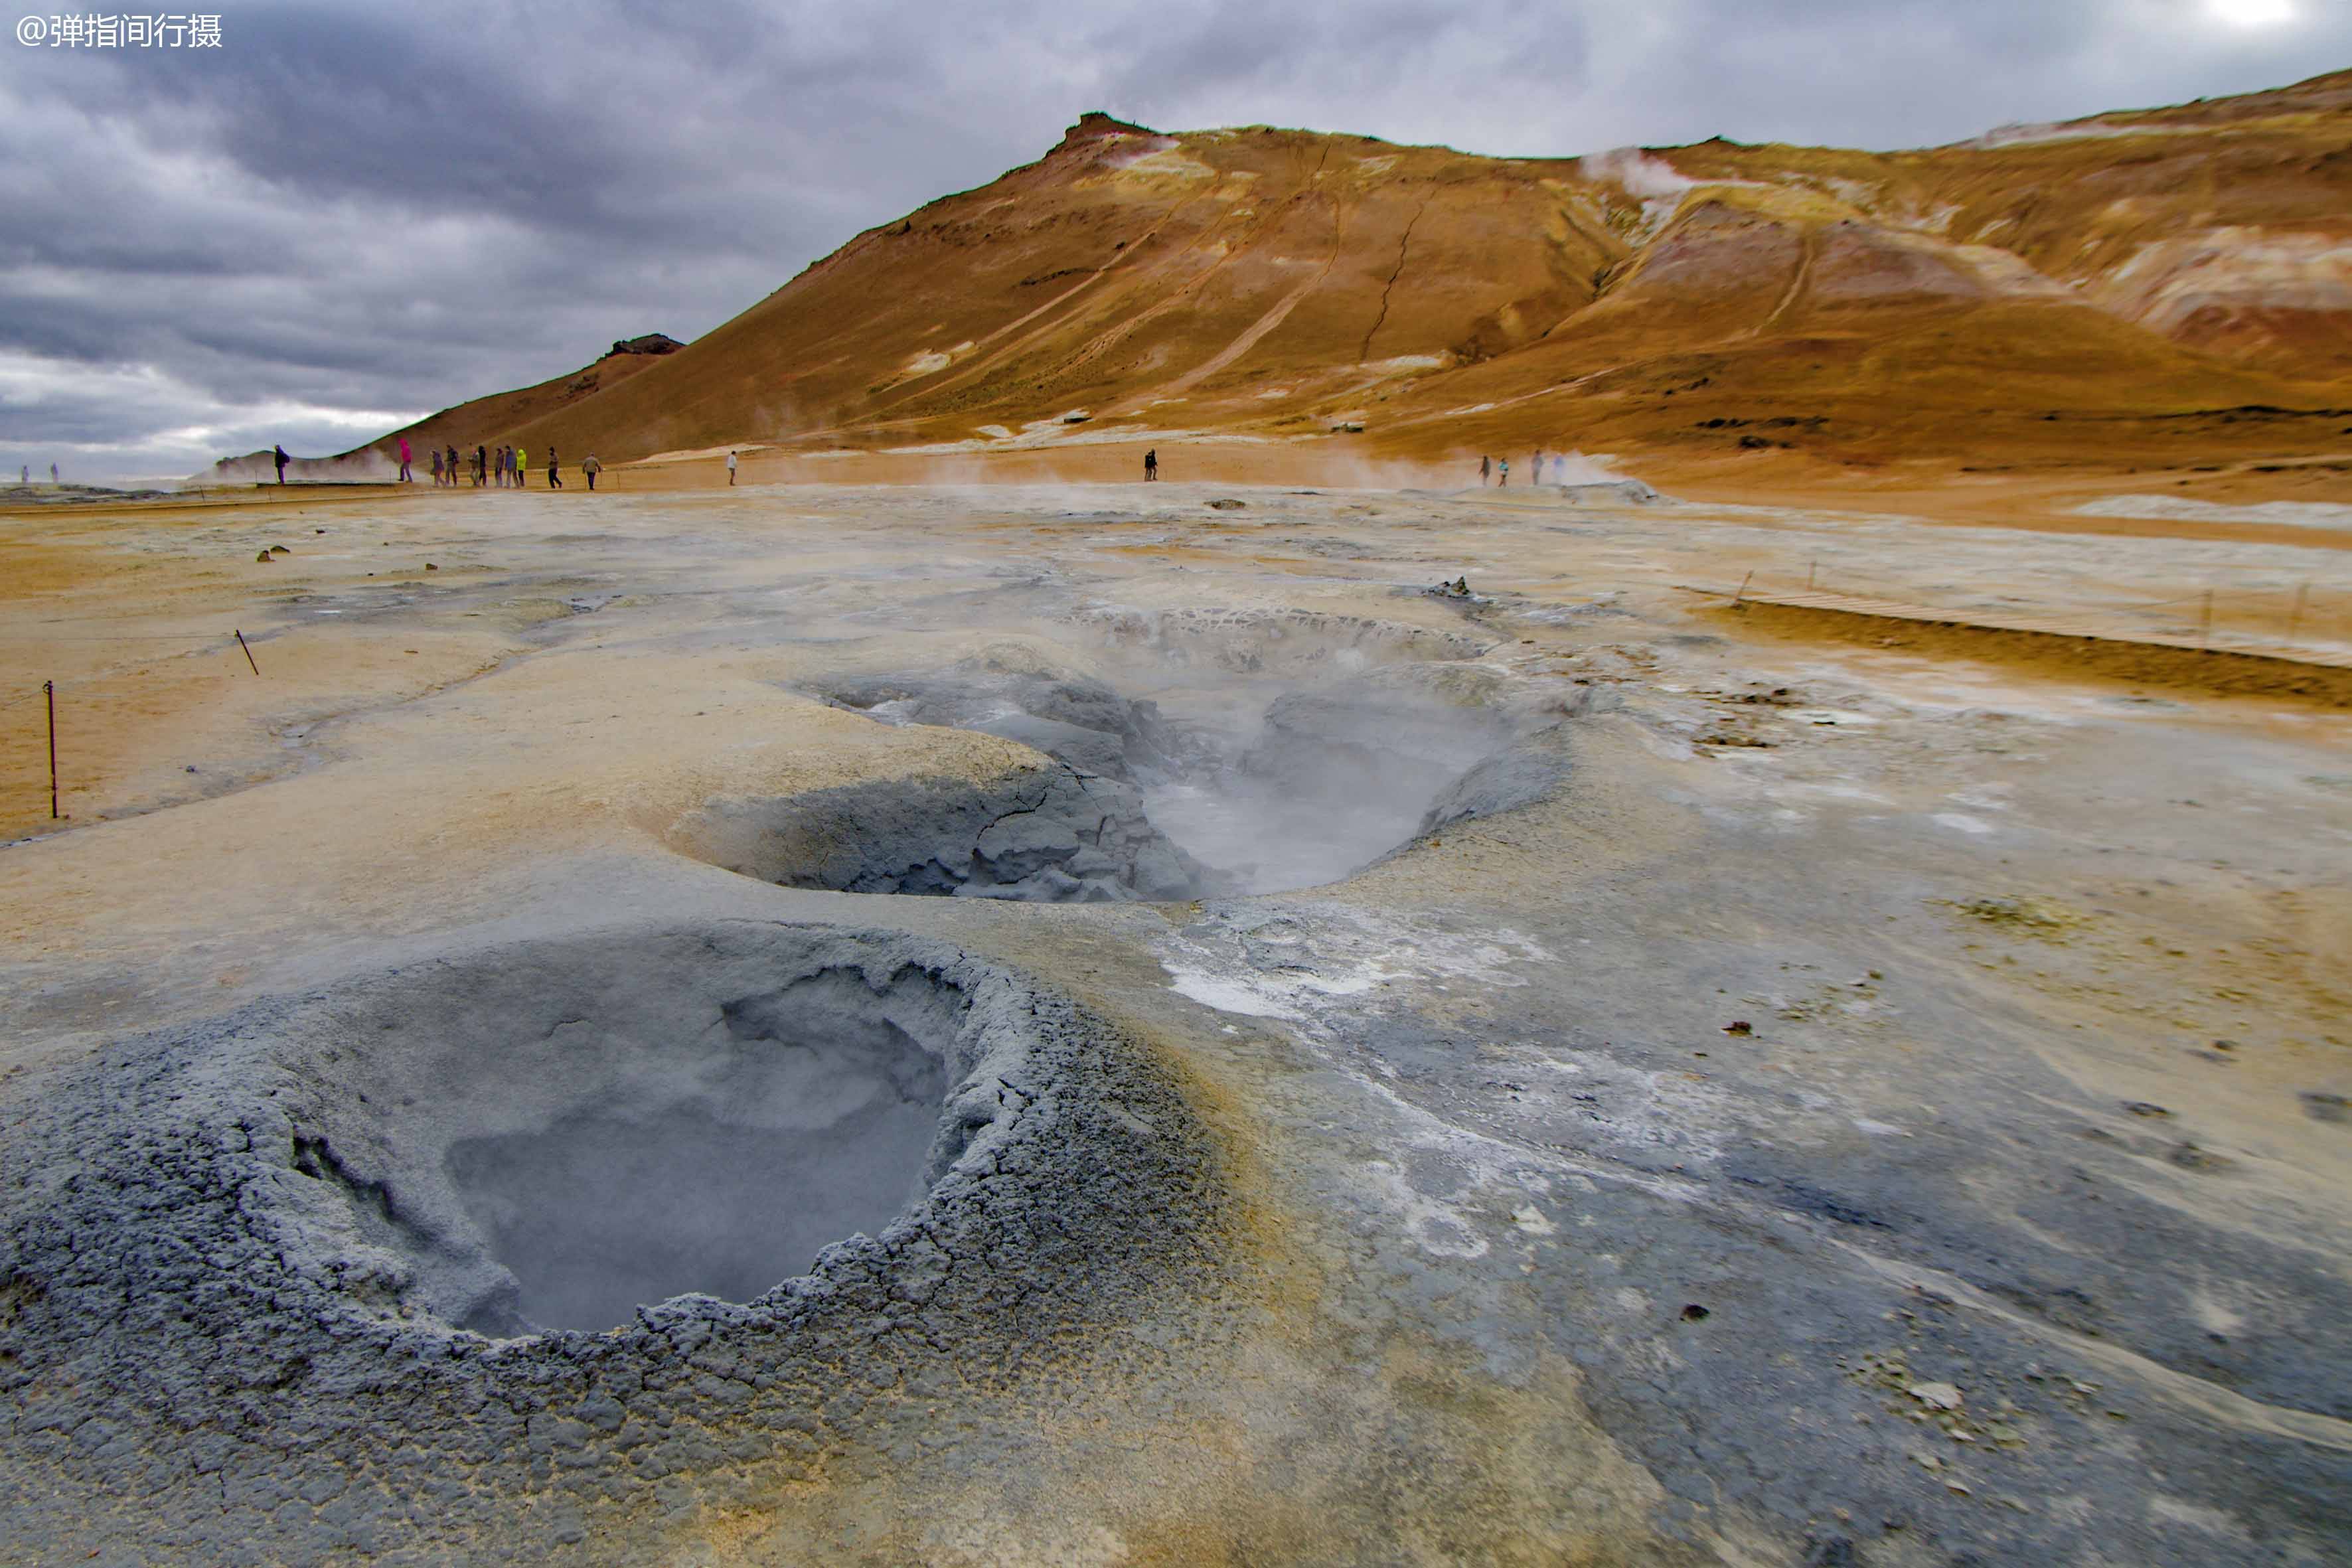 冰岛奇幻地热体验区,岩浆涌动白烟四起,人就像"热锅上的蚂蚁"